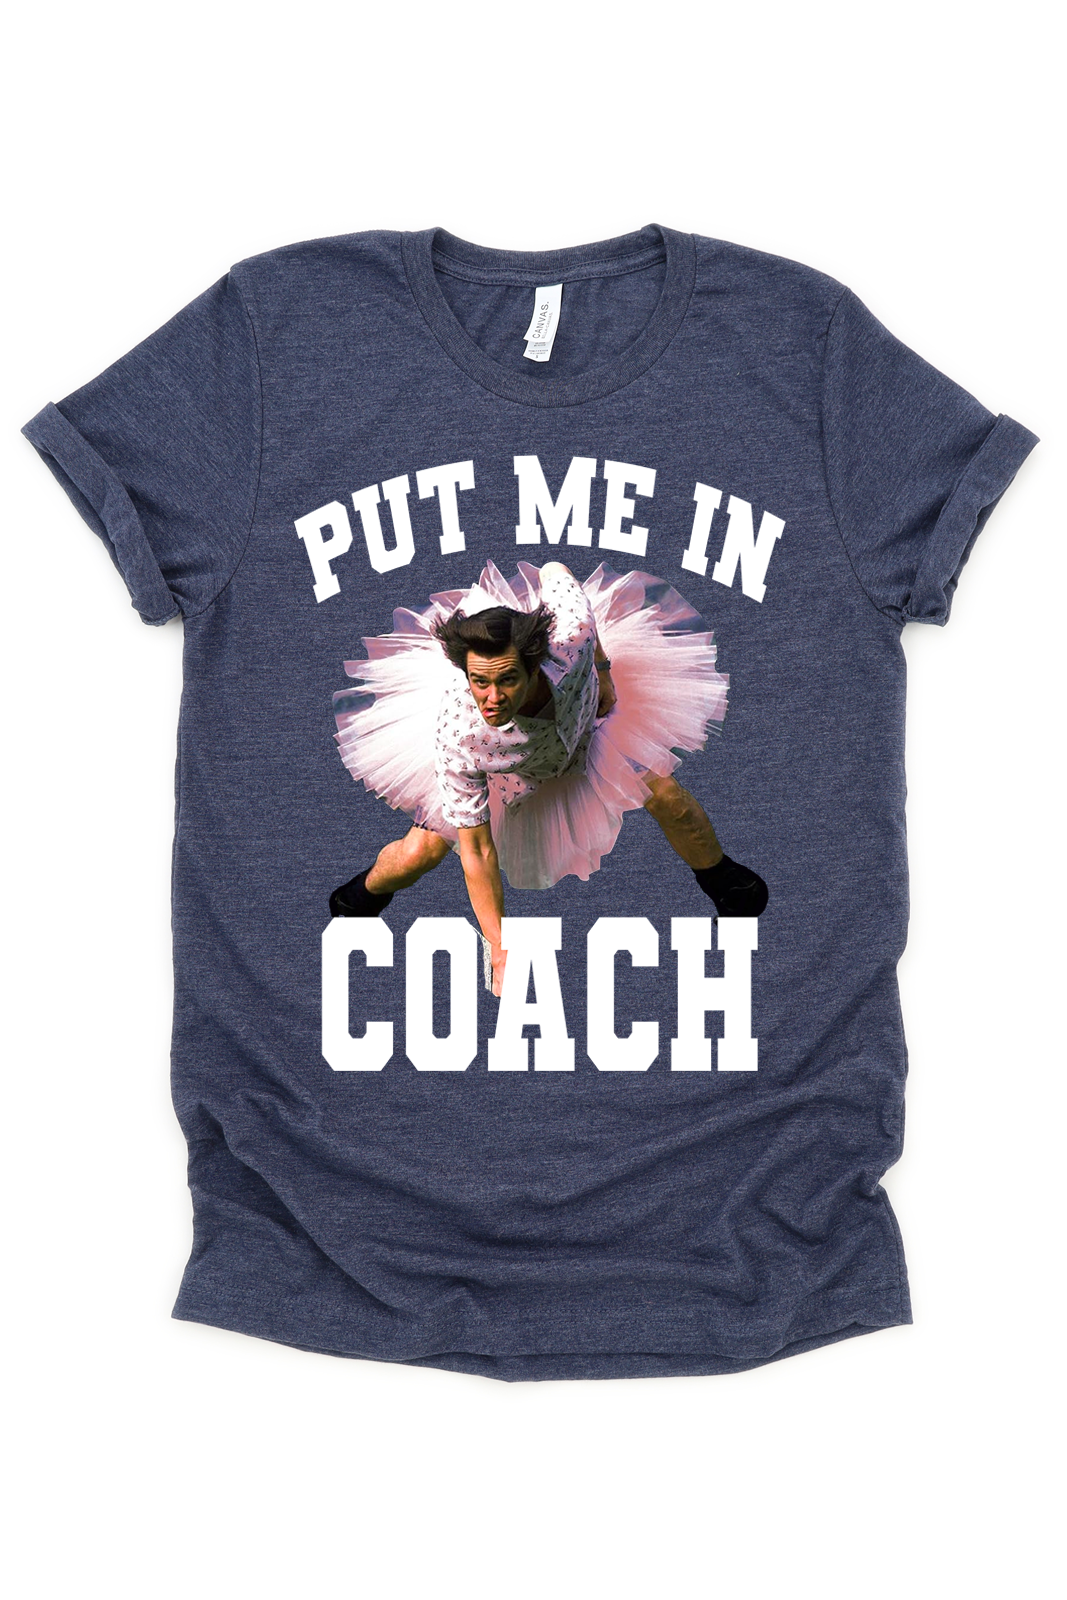 Put Me In Coach Tee/Sweatshirt